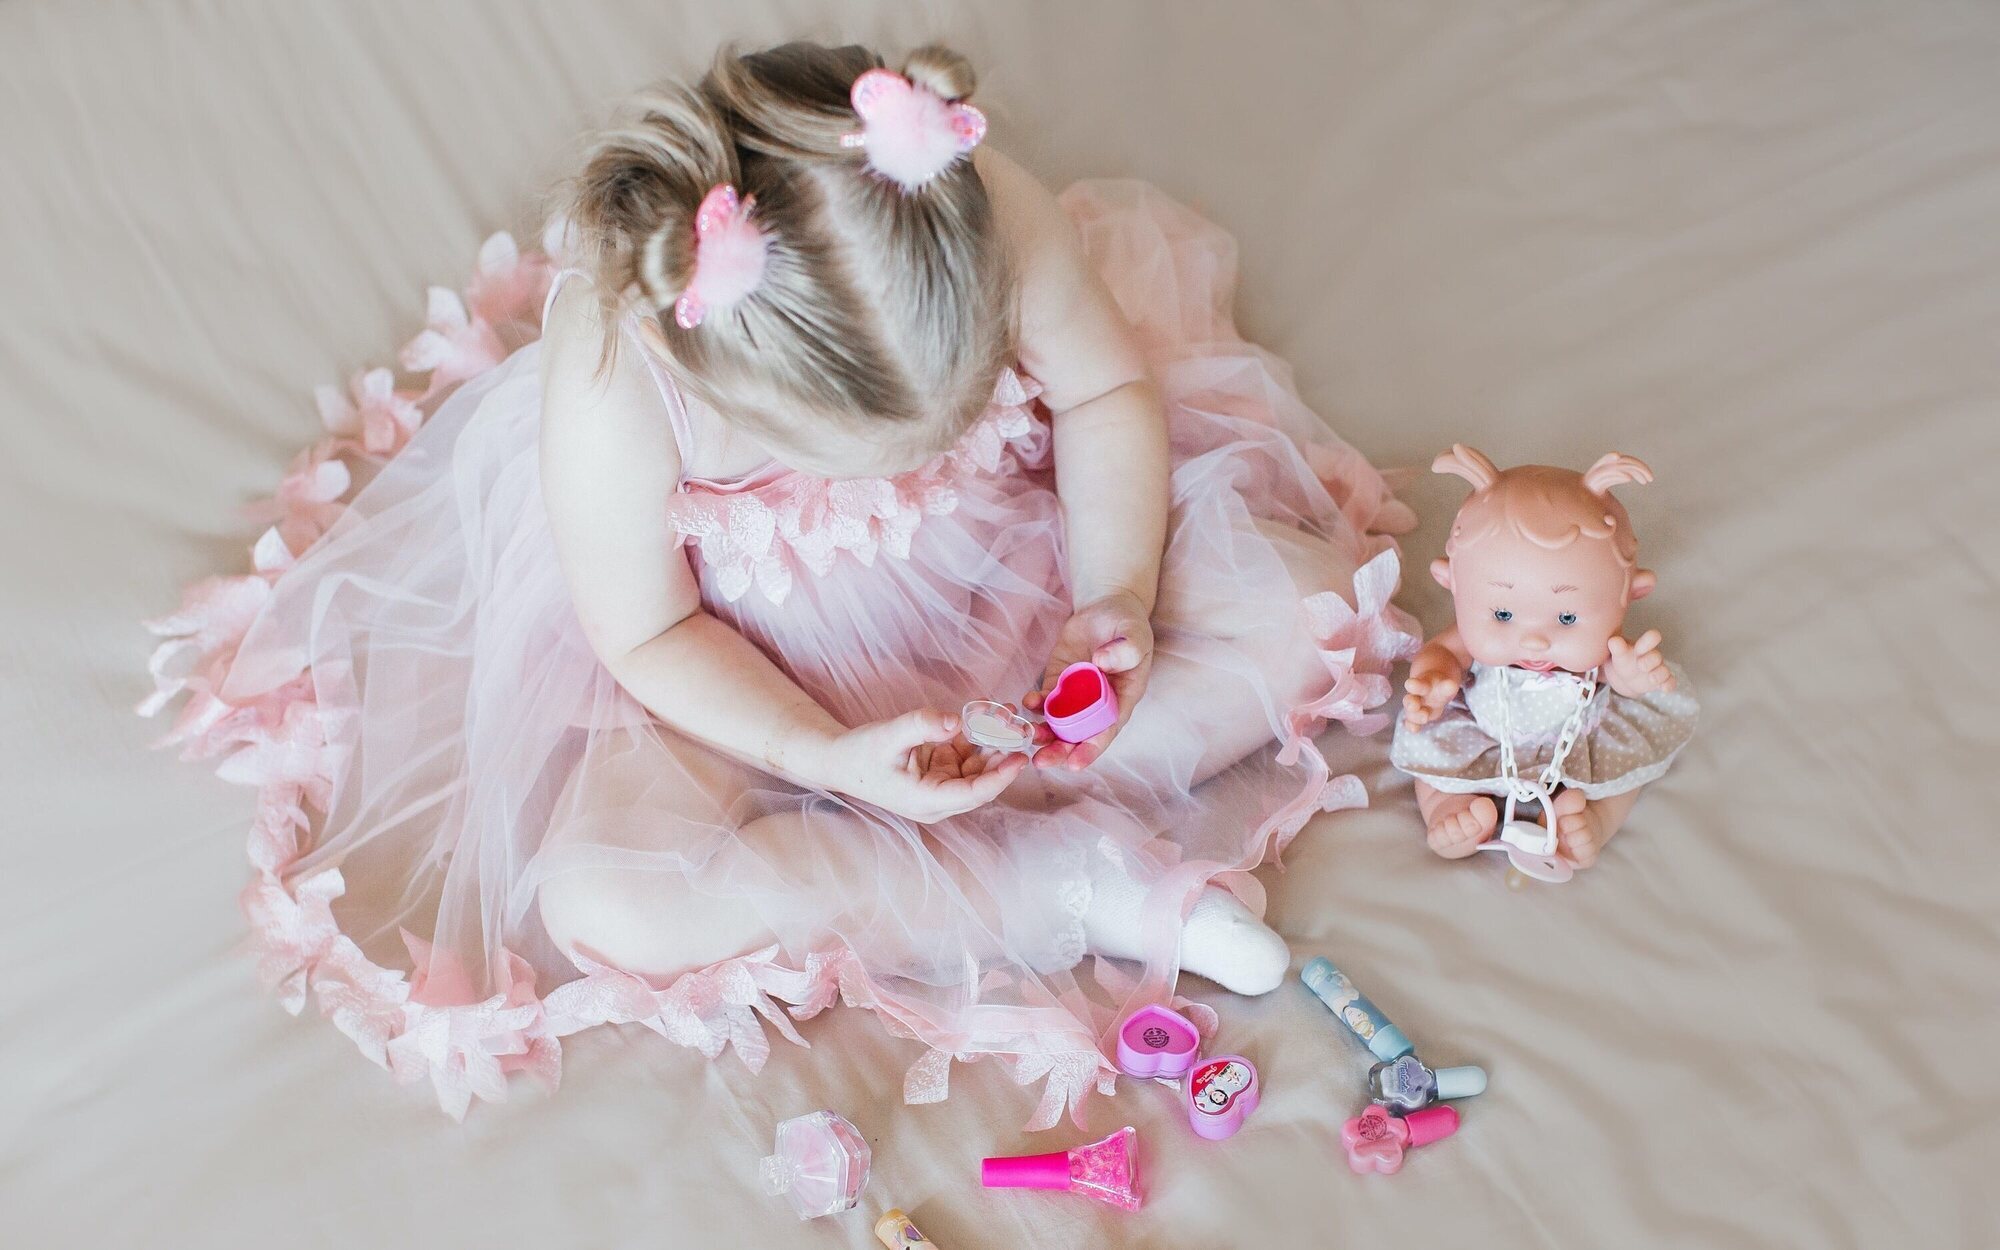 Consumo prohíbe la publicidad sexista de juguetes infantiles: Ni muñecas para niñas ni coches para niños